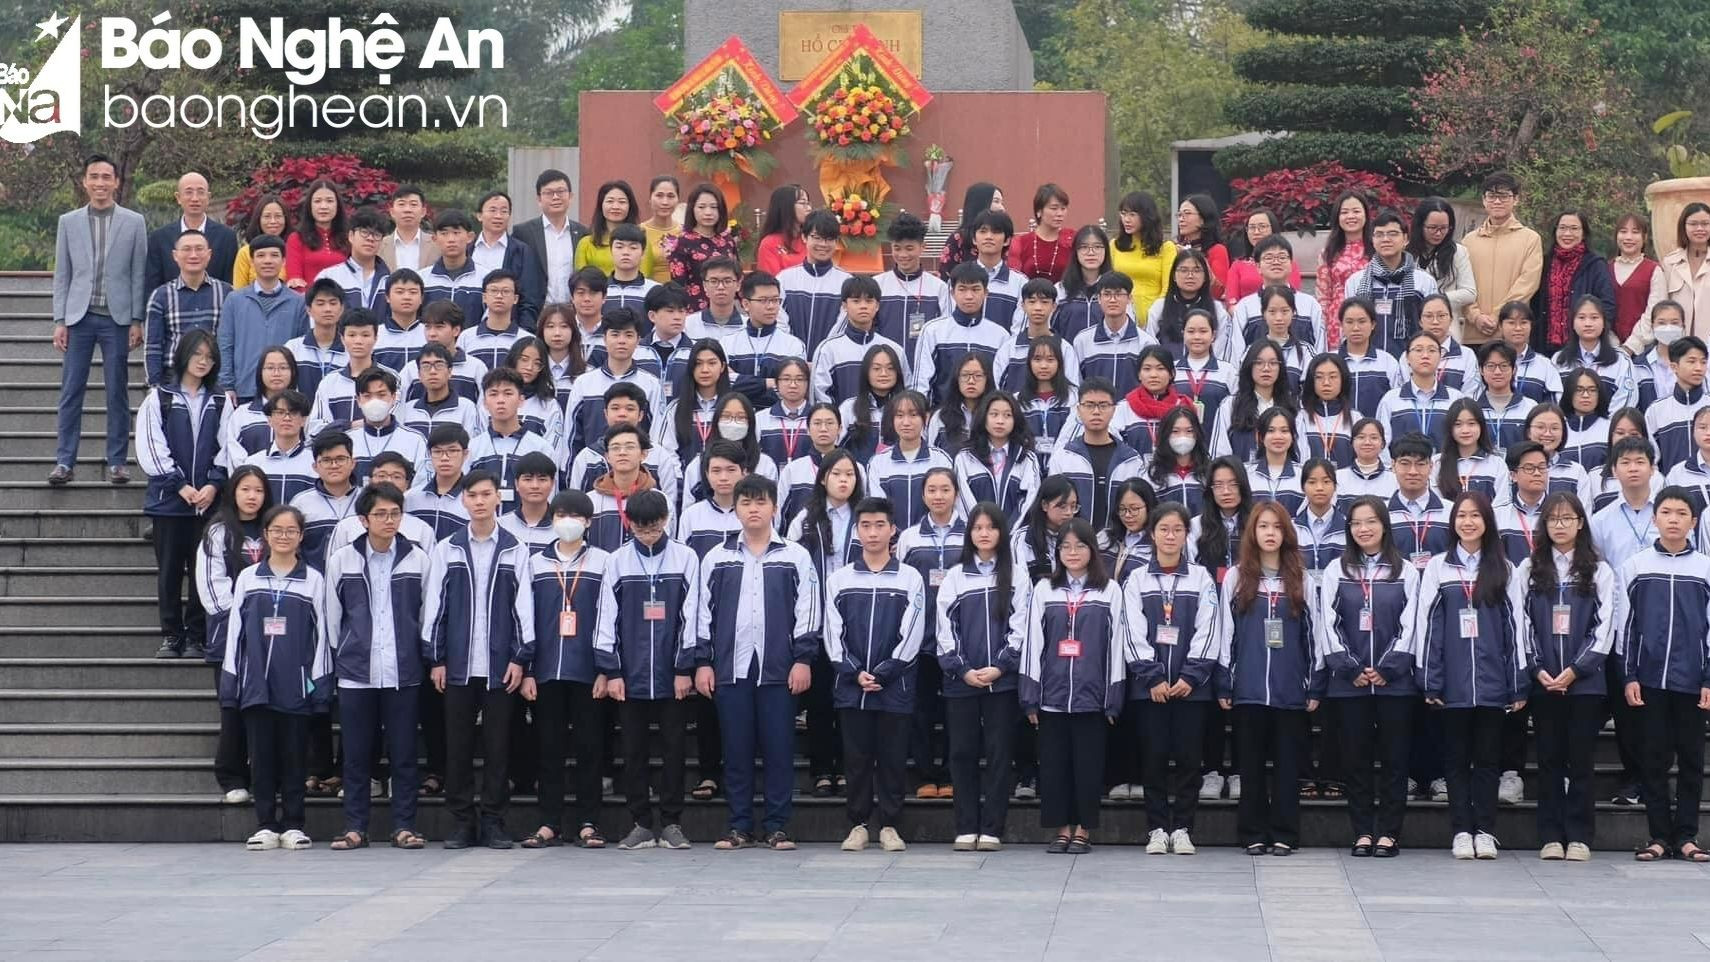 bna_Đoàn học sinh tham dự Kỳ thi chọn học sinh giỏi quốc gia của Trường THPT chuyên Phan Bội Châu.jpg